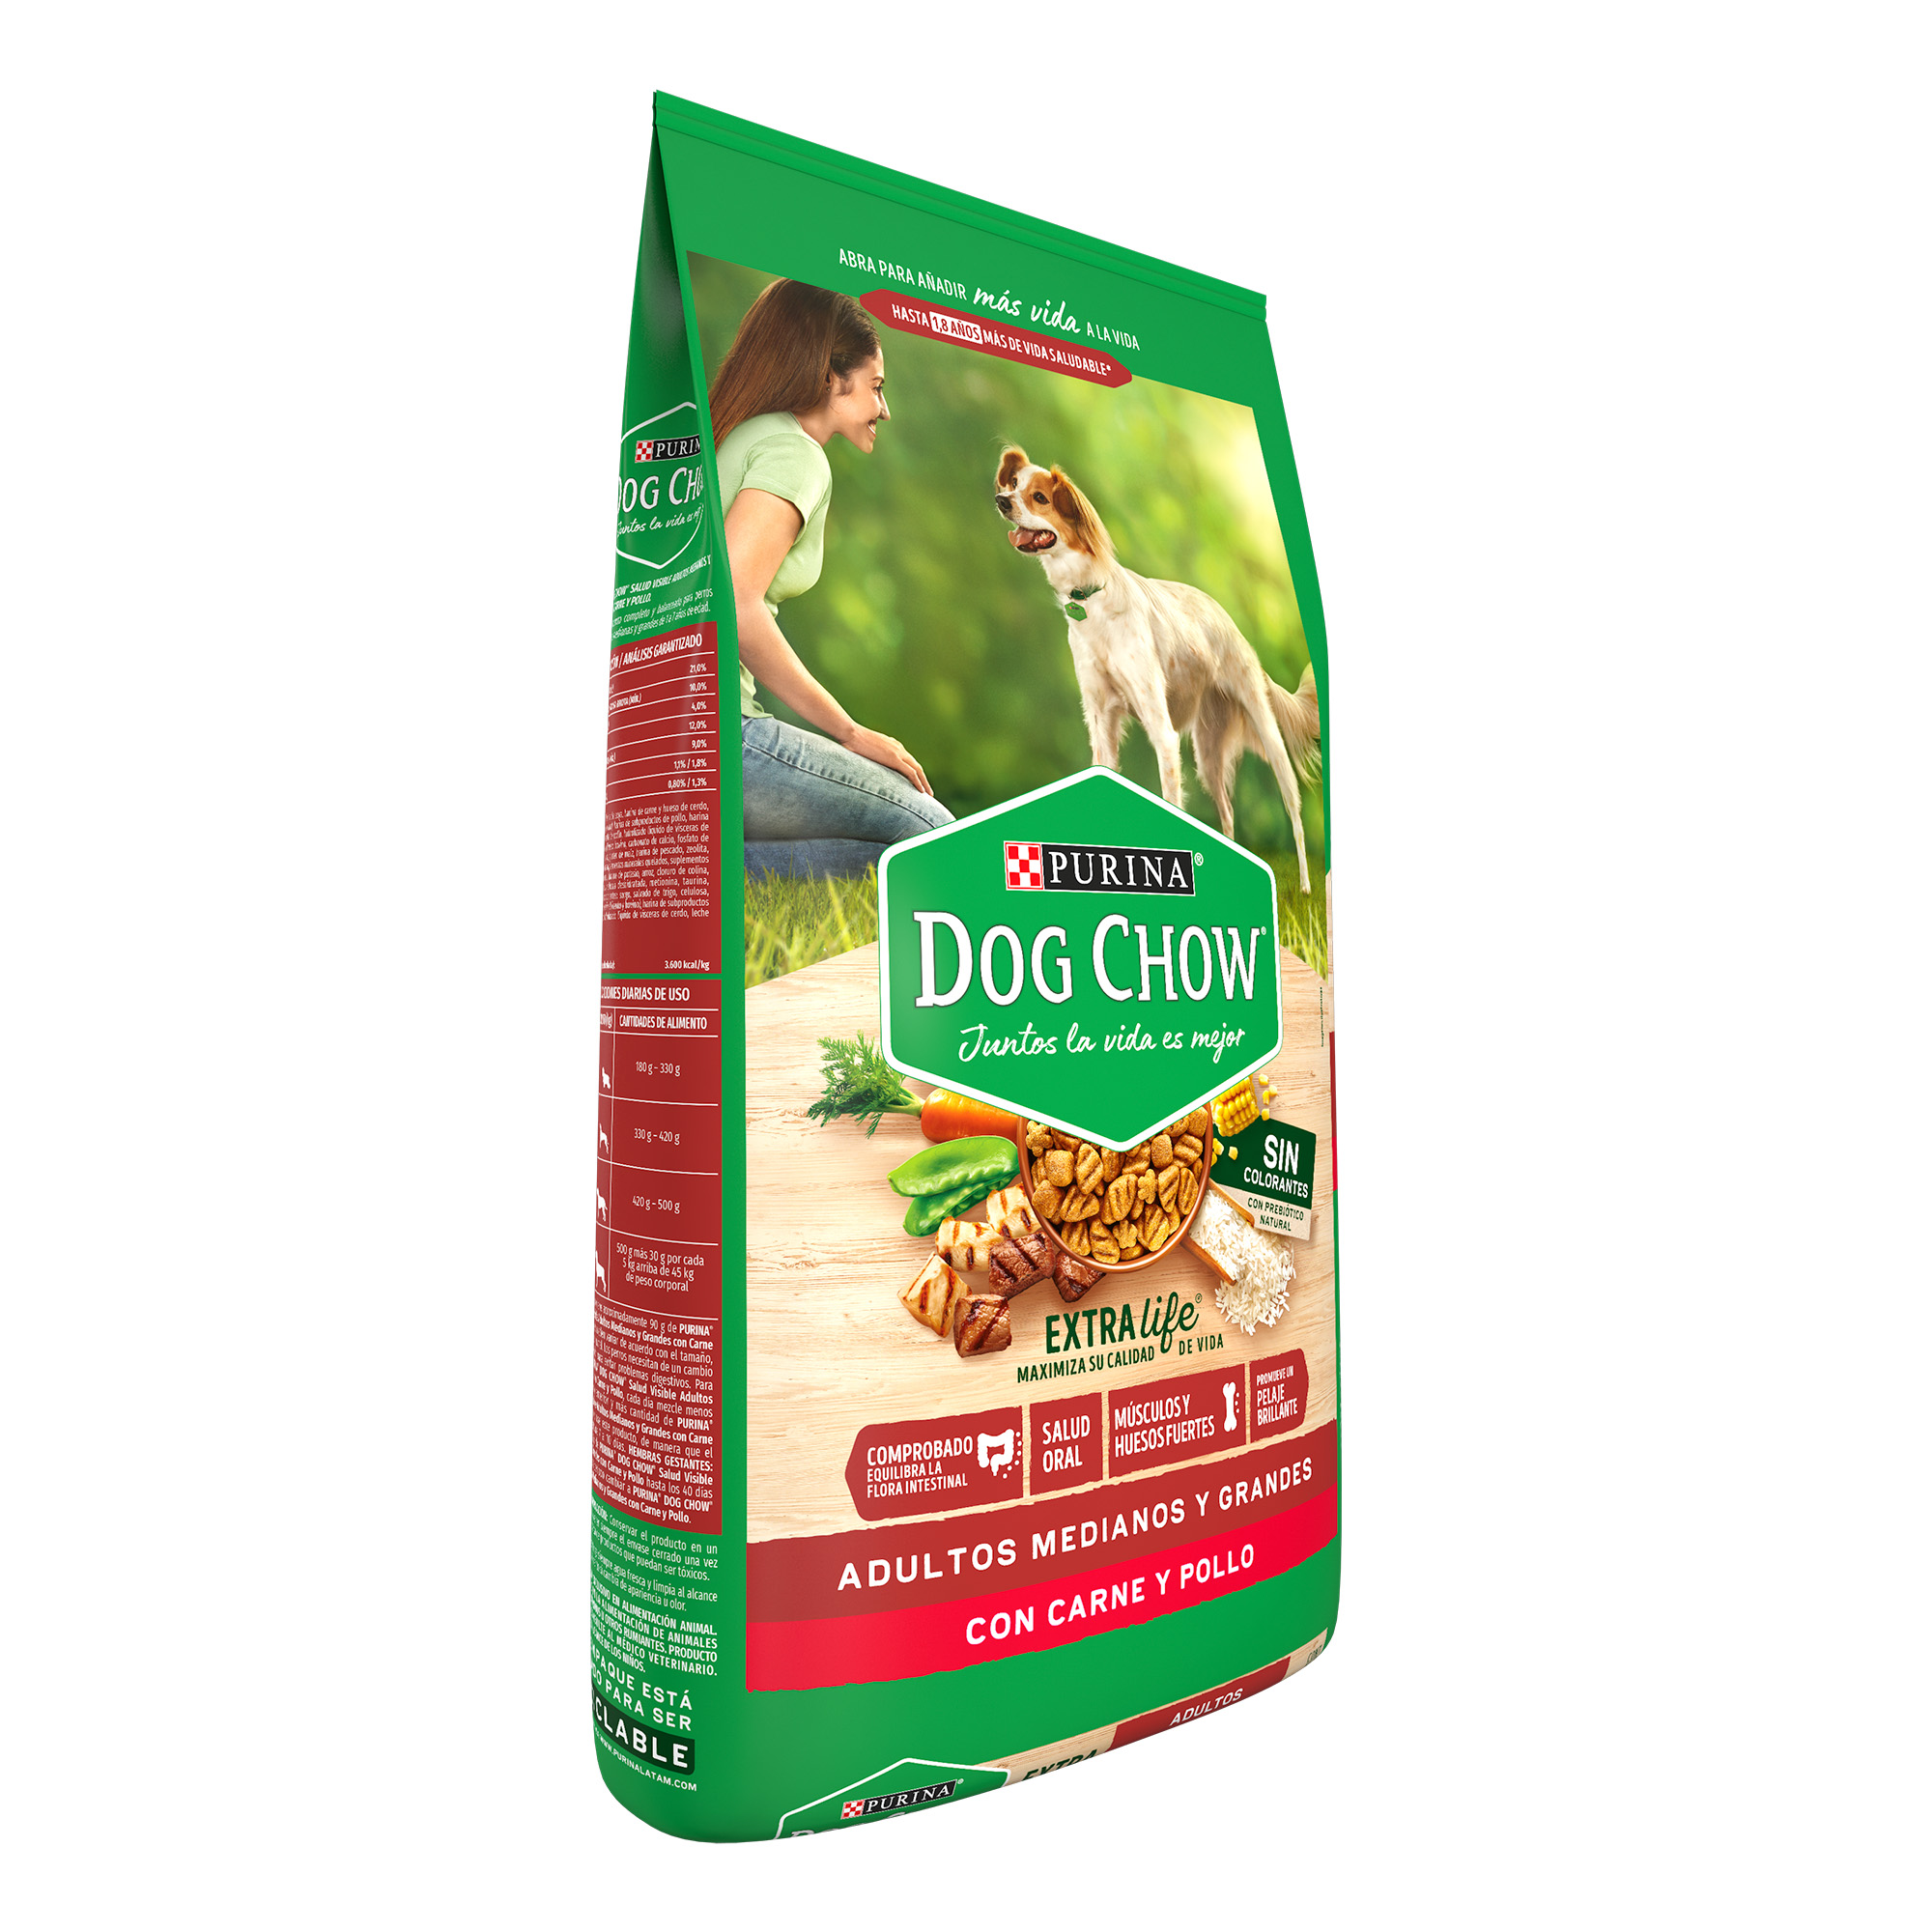 Dog Chow Sin Colorantes Alimento seco perros adultos medianos y grandes, bulto de 20kg